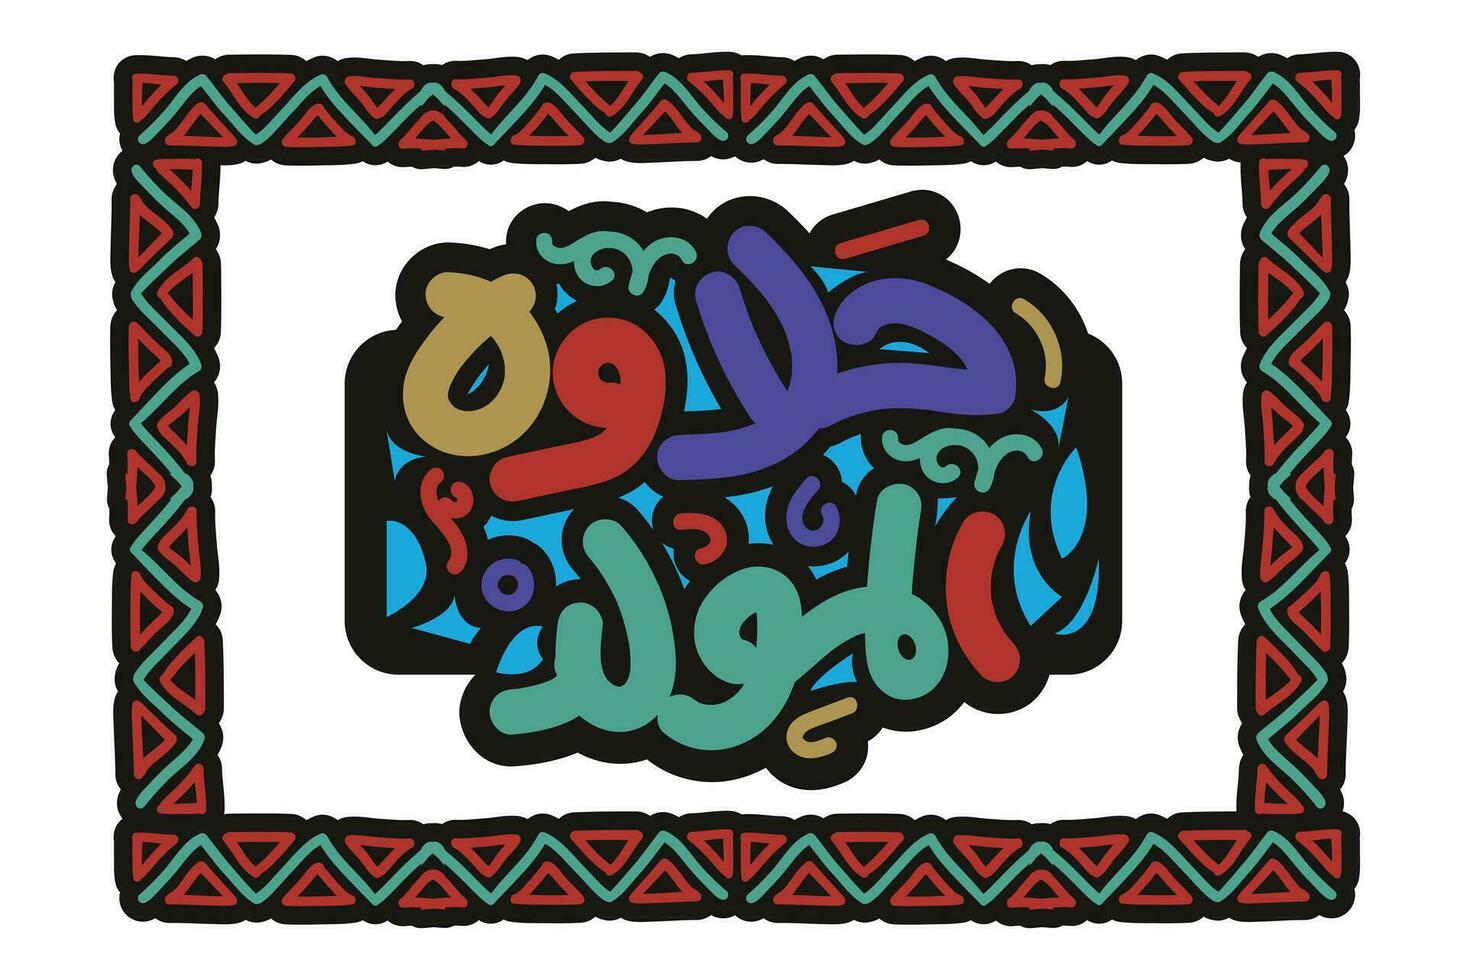 halawet al gjutna i arabicum översättning födelsedag sötsaker i arabicum språk handskriven kalligrafi profet mohamed födelse islamic firande typografi kort design vektor